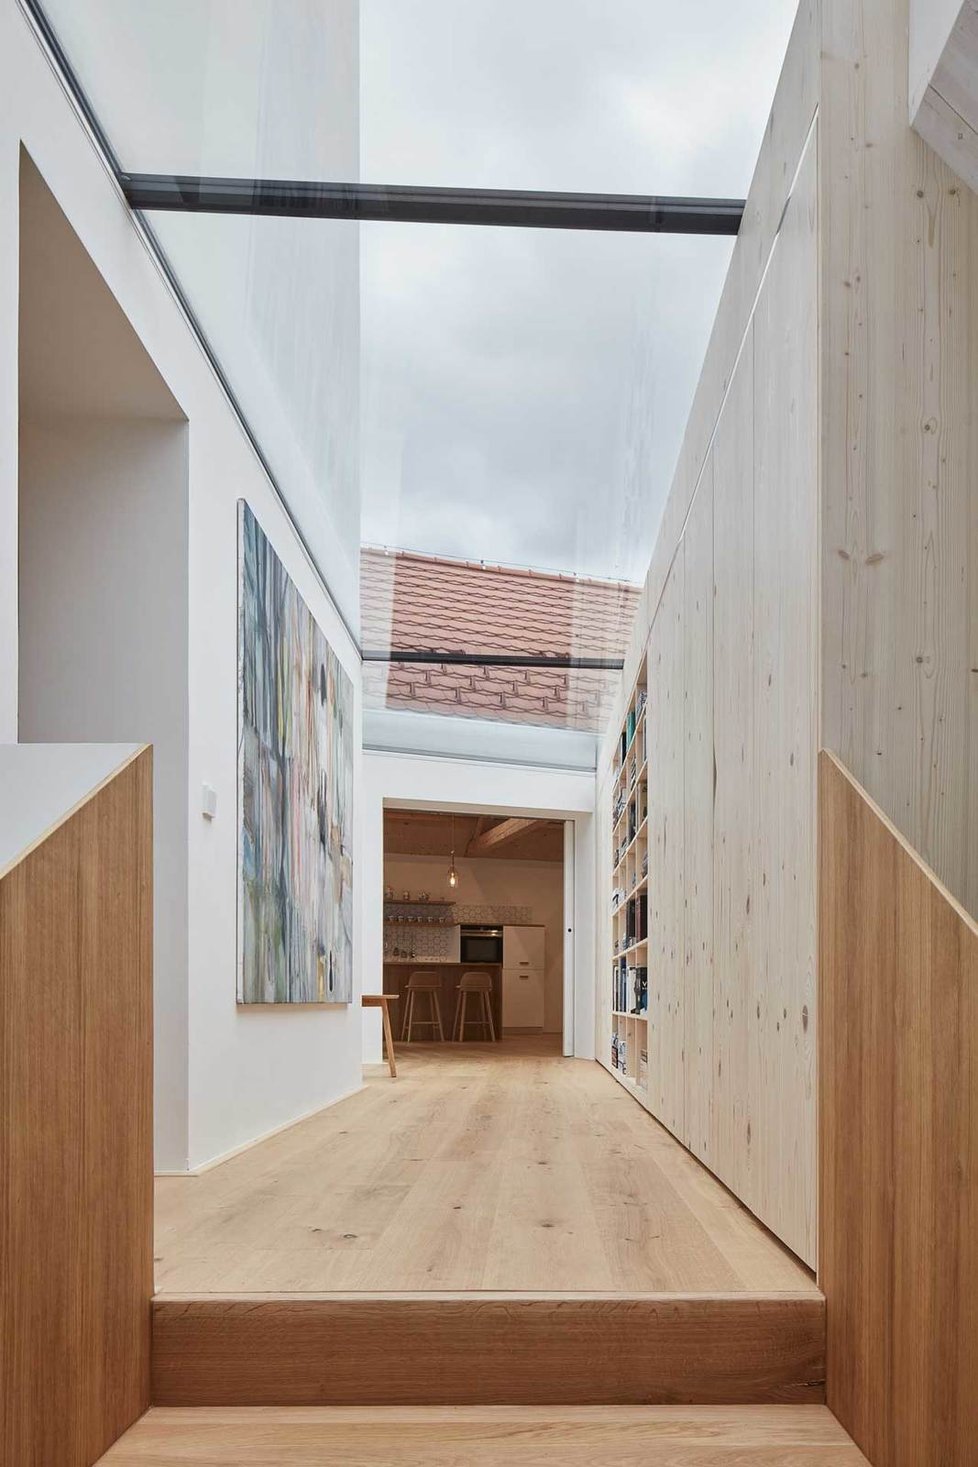 Moderní dům v Jinonicích vznikl díky šetrné rekonstrukci chátrající stavby